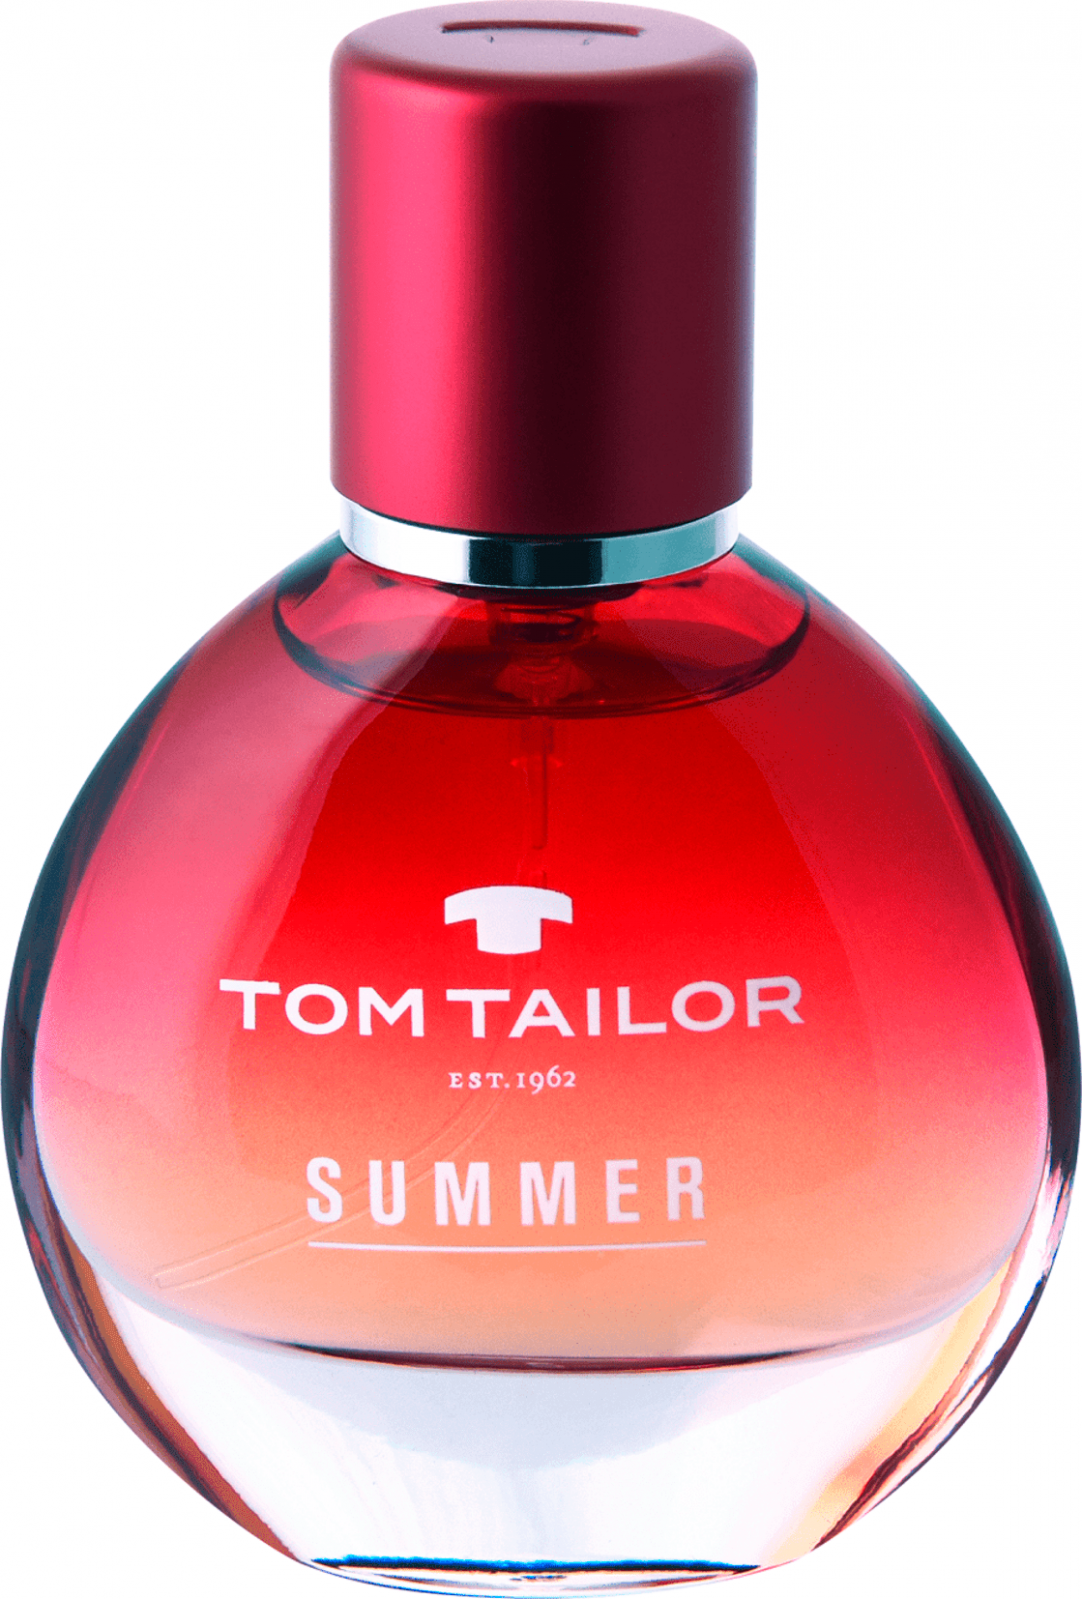 Tom Tailor духи. Tom Tailor est 1962 духи. Том Тейлор духи женские. Духи Tom Tailor BODYTALK. Том тейлор парфюм